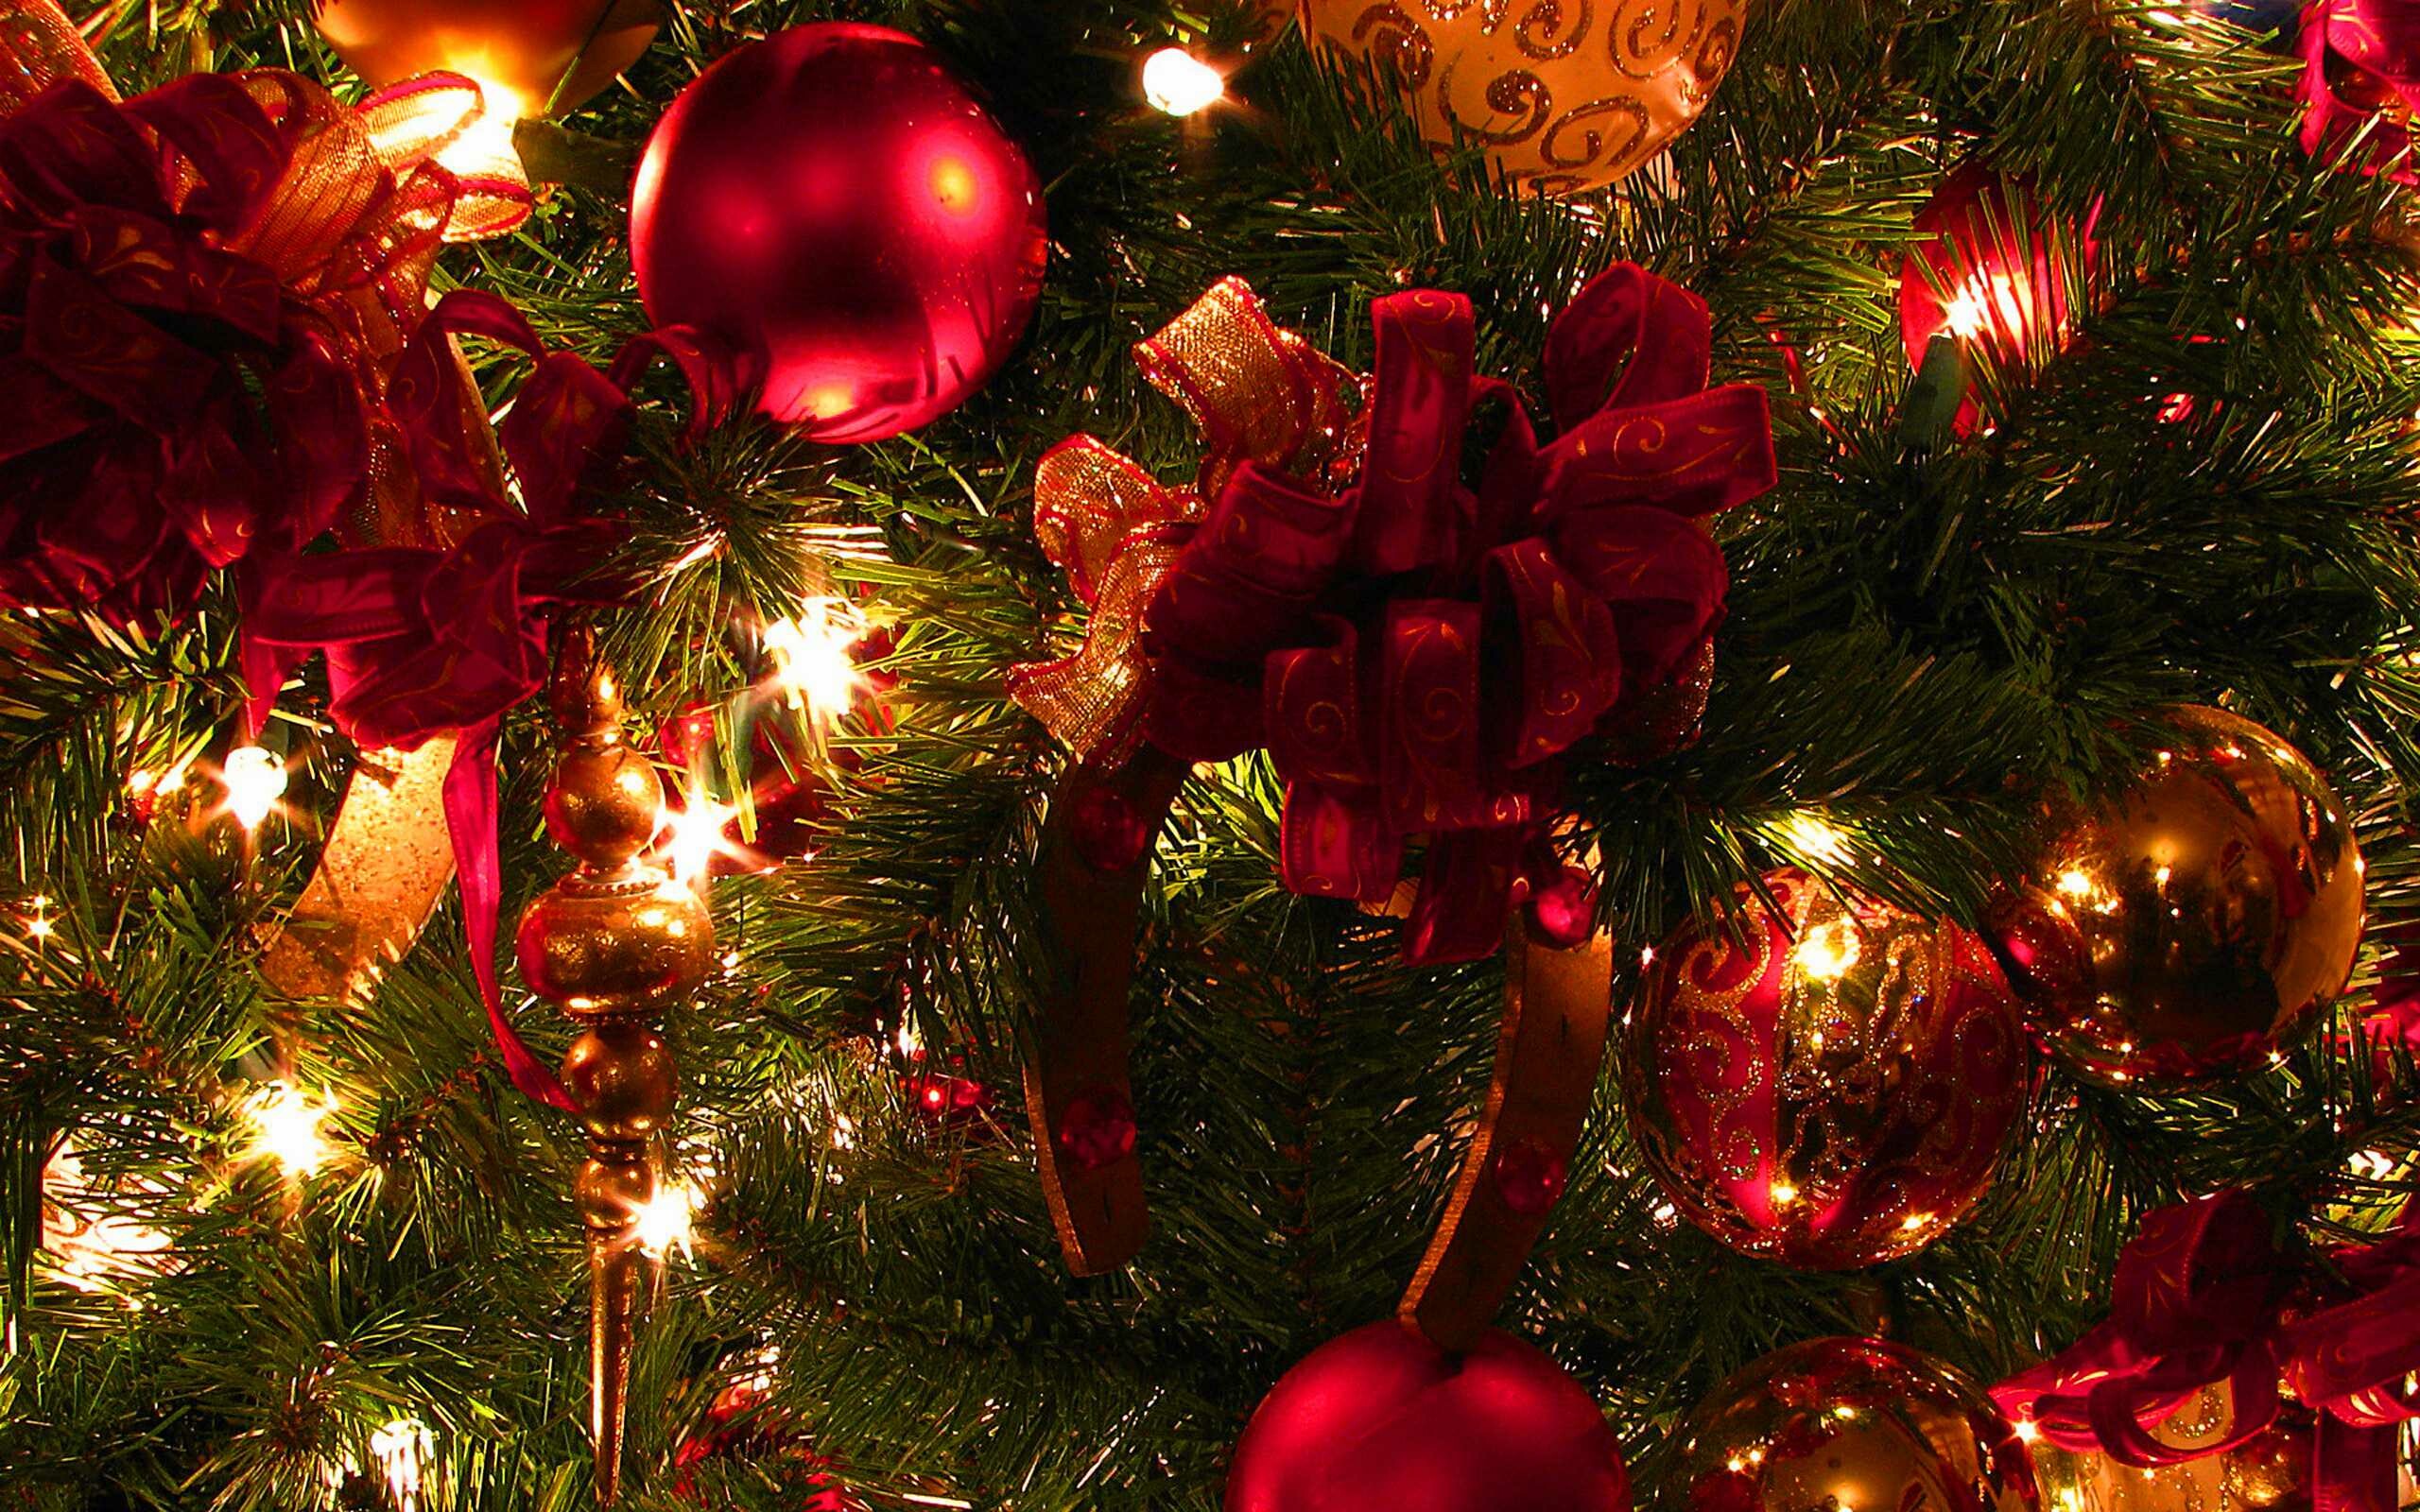 Christmas: Wreath decoration, Fir tree branch, Balls. 2560x1600 HD Wallpaper.